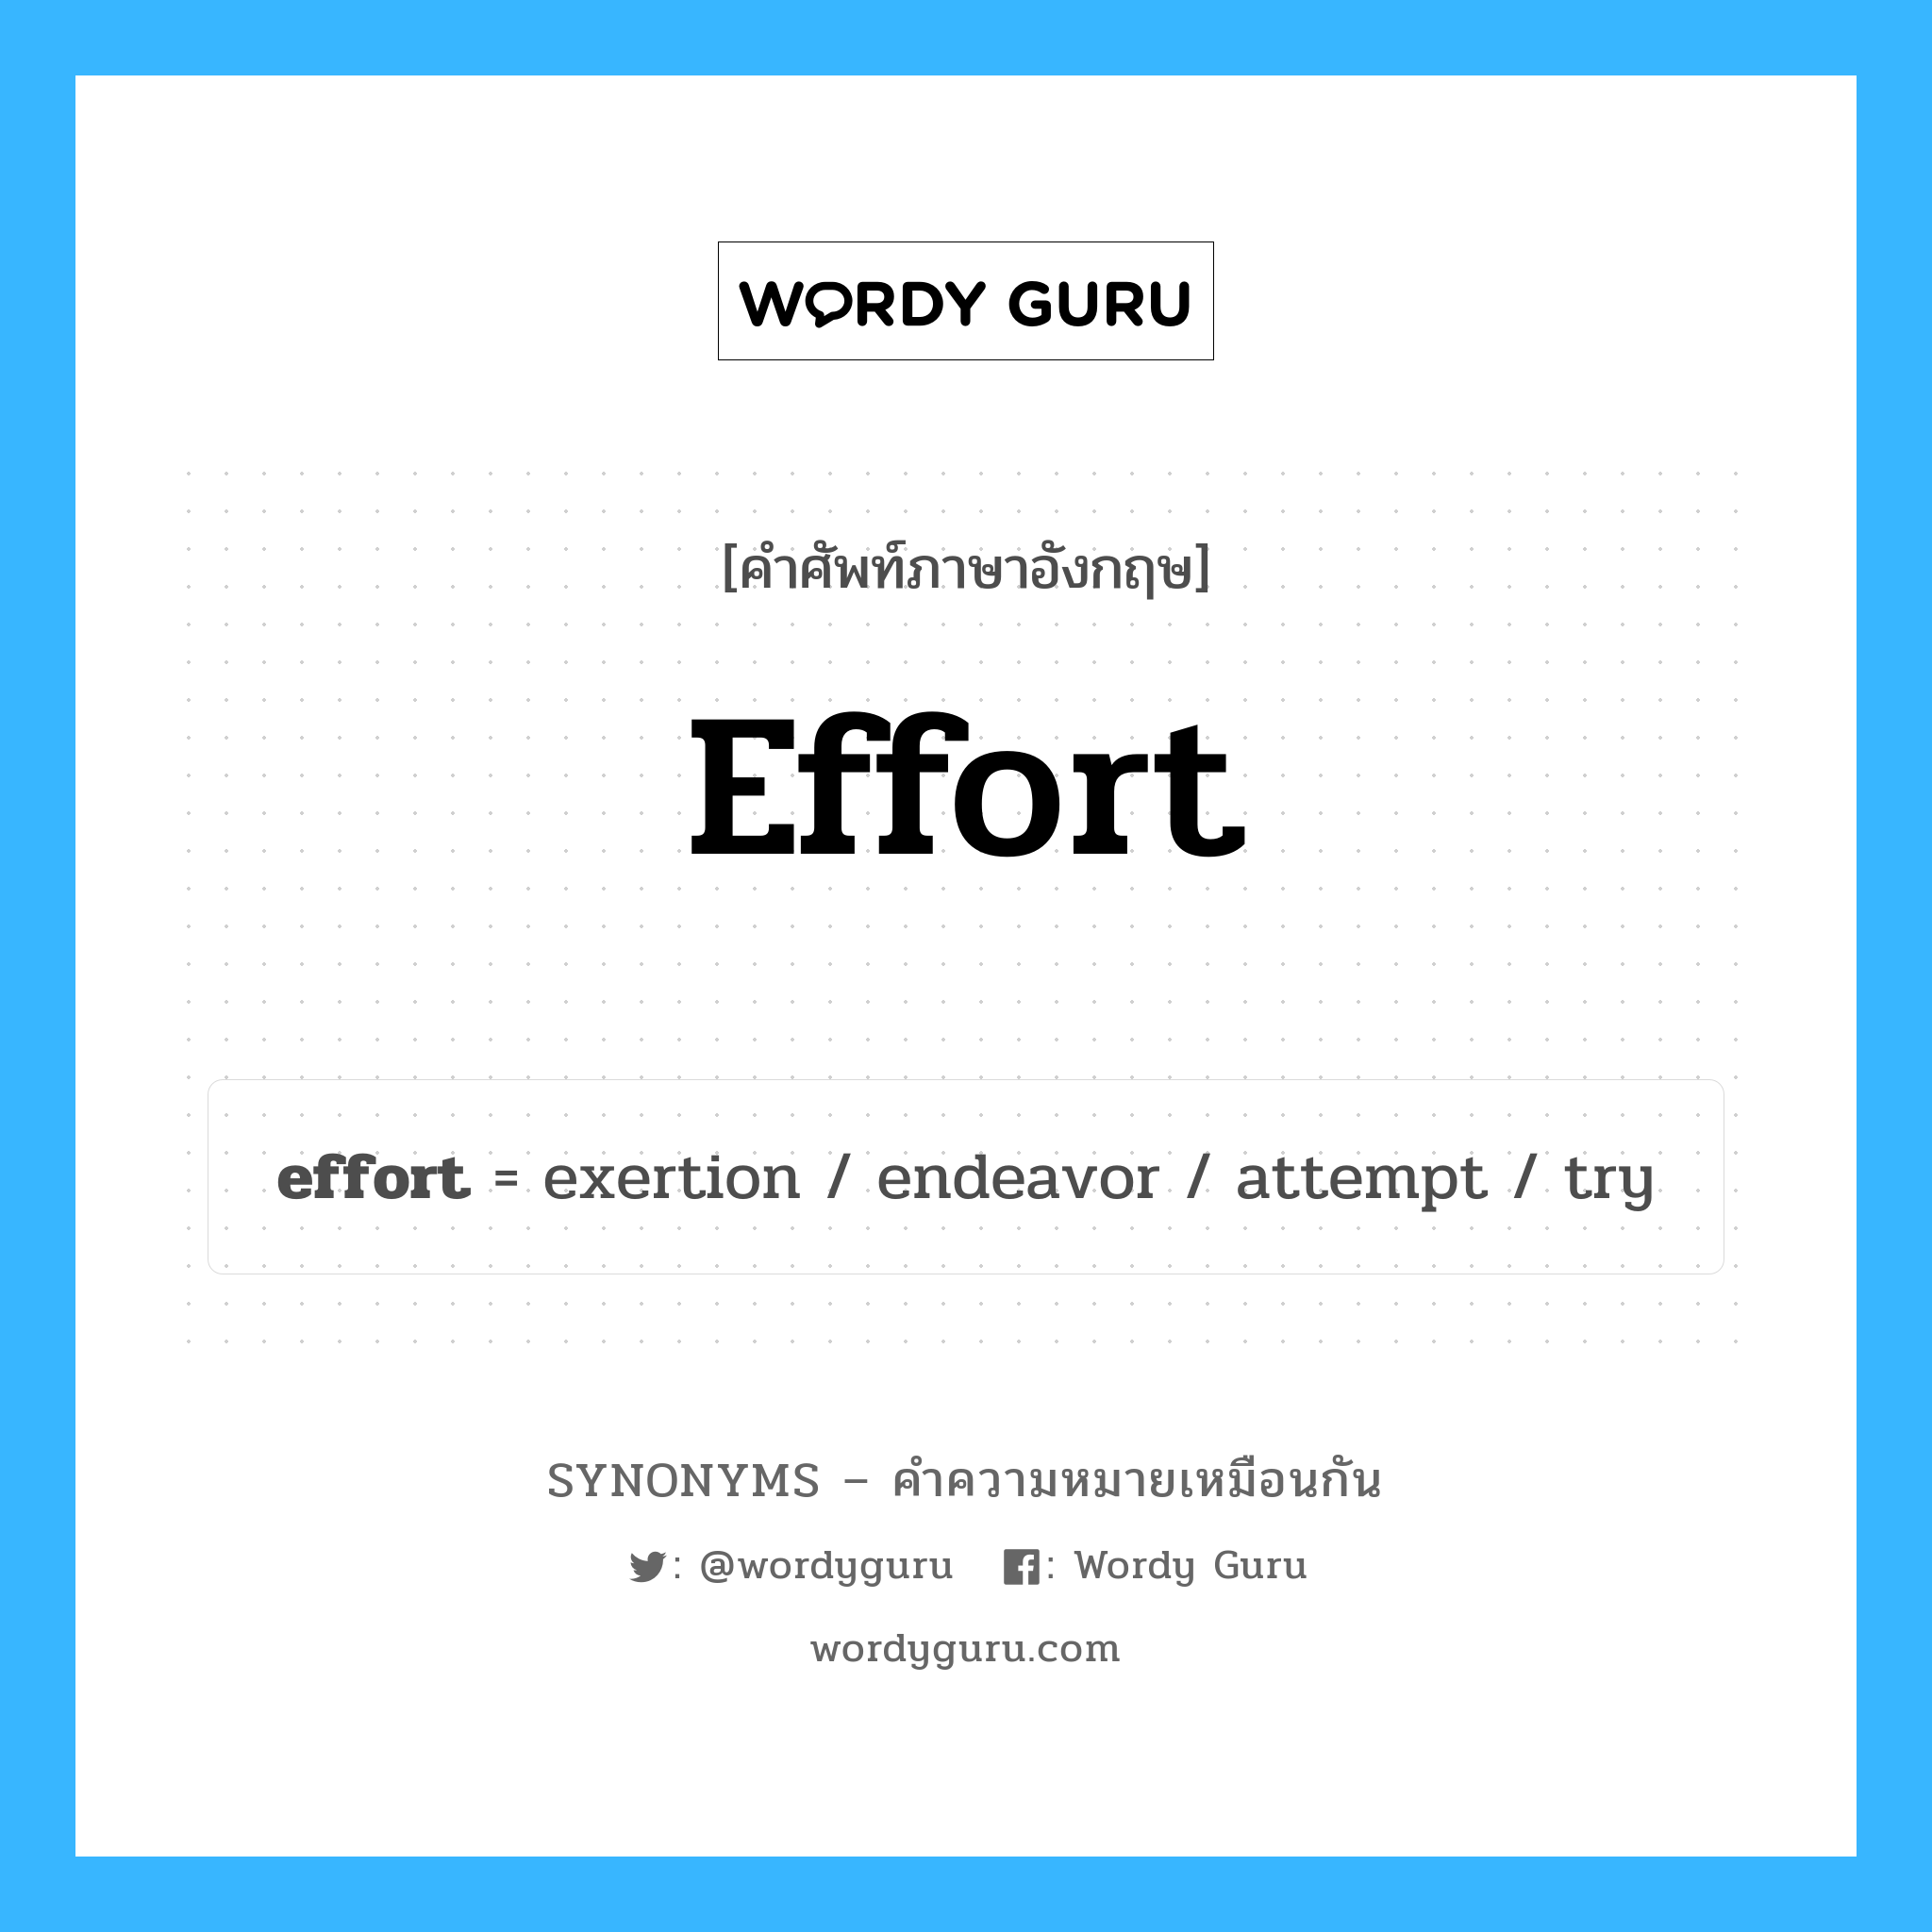 effort เป็นหนึ่งใน try และมีคำอื่น ๆ อีกดังนี้, คำศัพท์ภาษาอังกฤษ effort ความหมายคล้ายกันกับ try แปลว่า ลอง หมวด try